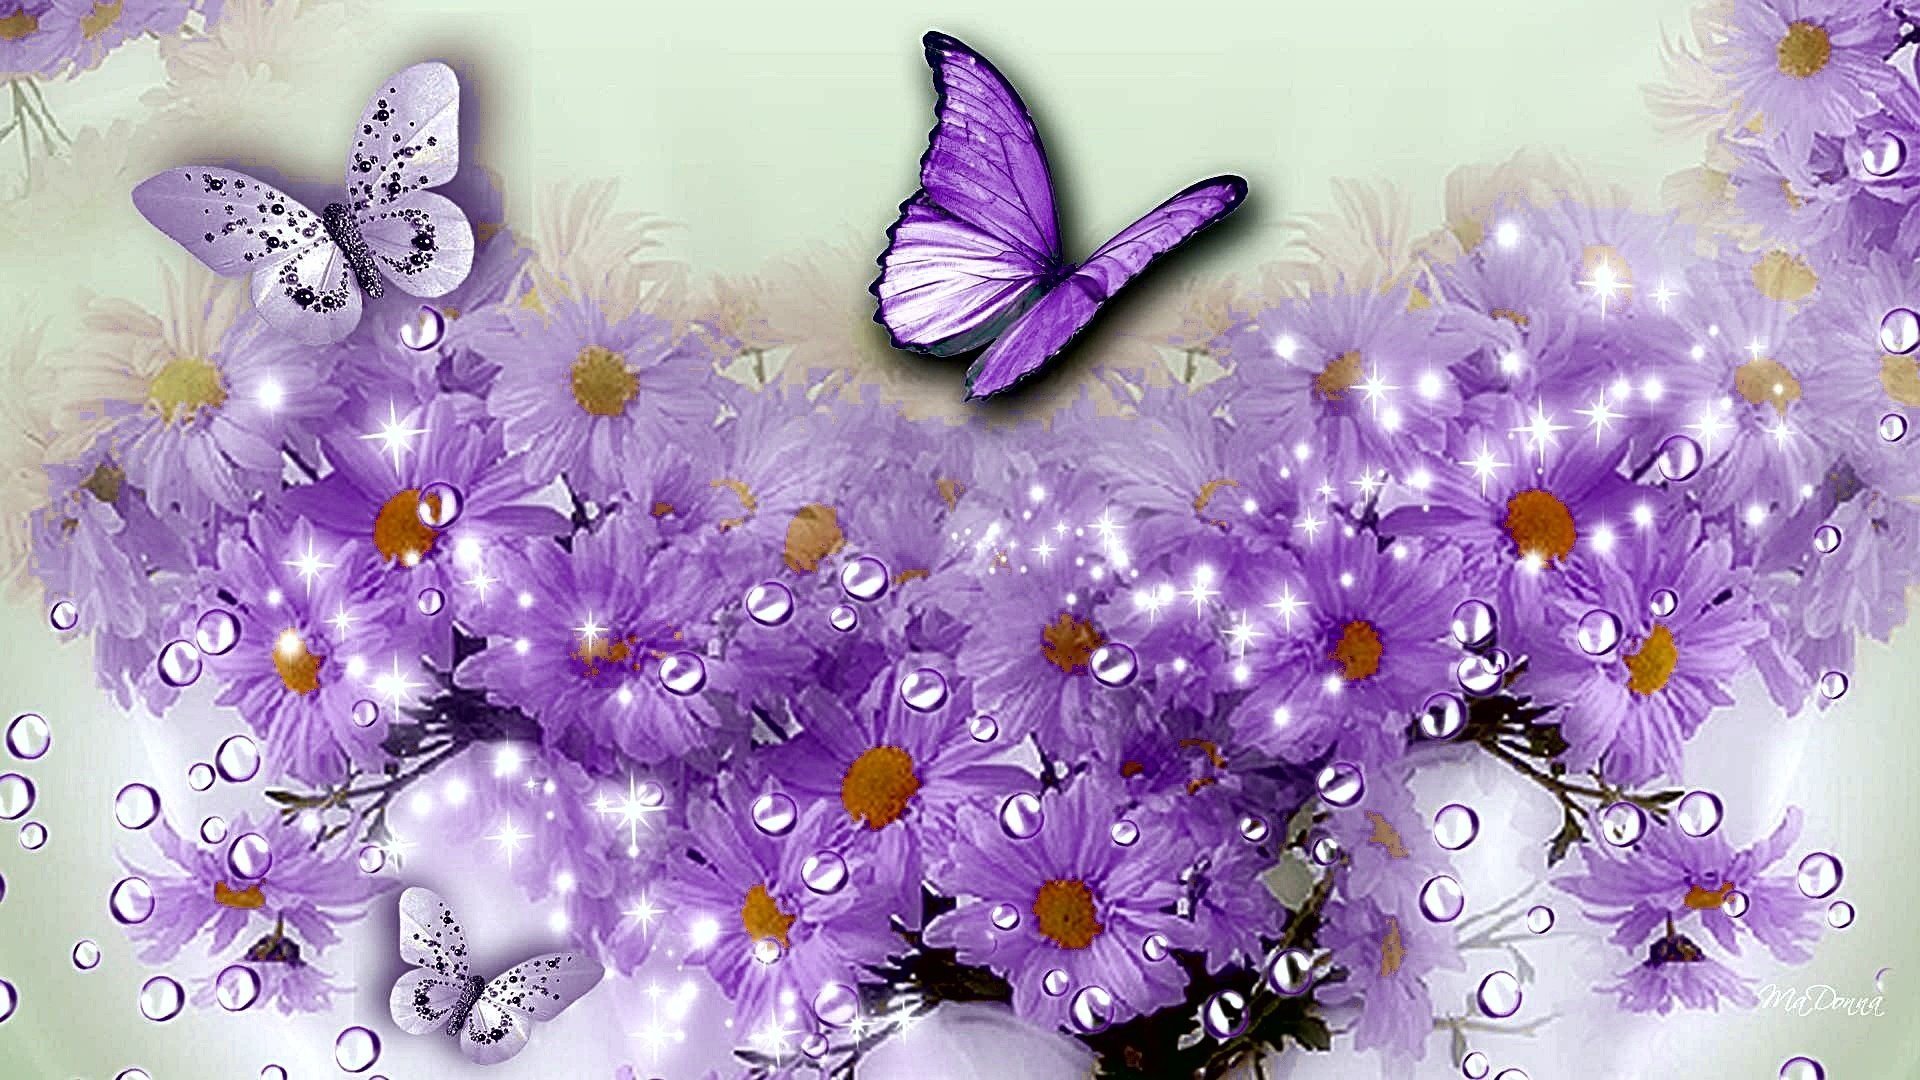 Праздничная открытка с сердечками, бабочками, цветами, - векторизованный клипарт